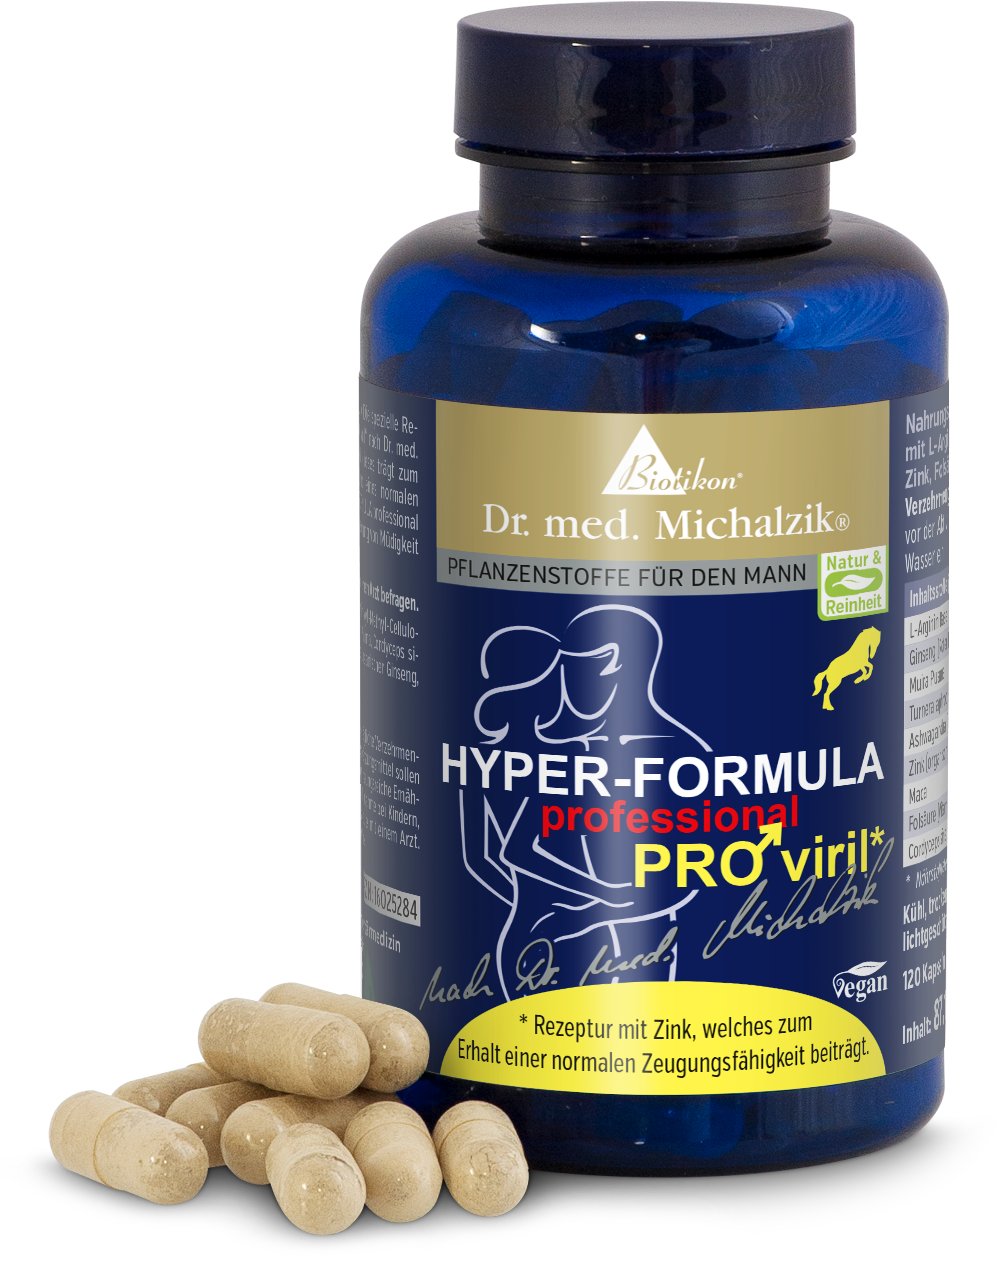 Hyper PRO viril stamina by Dr. med. Michalzik, Set of 2